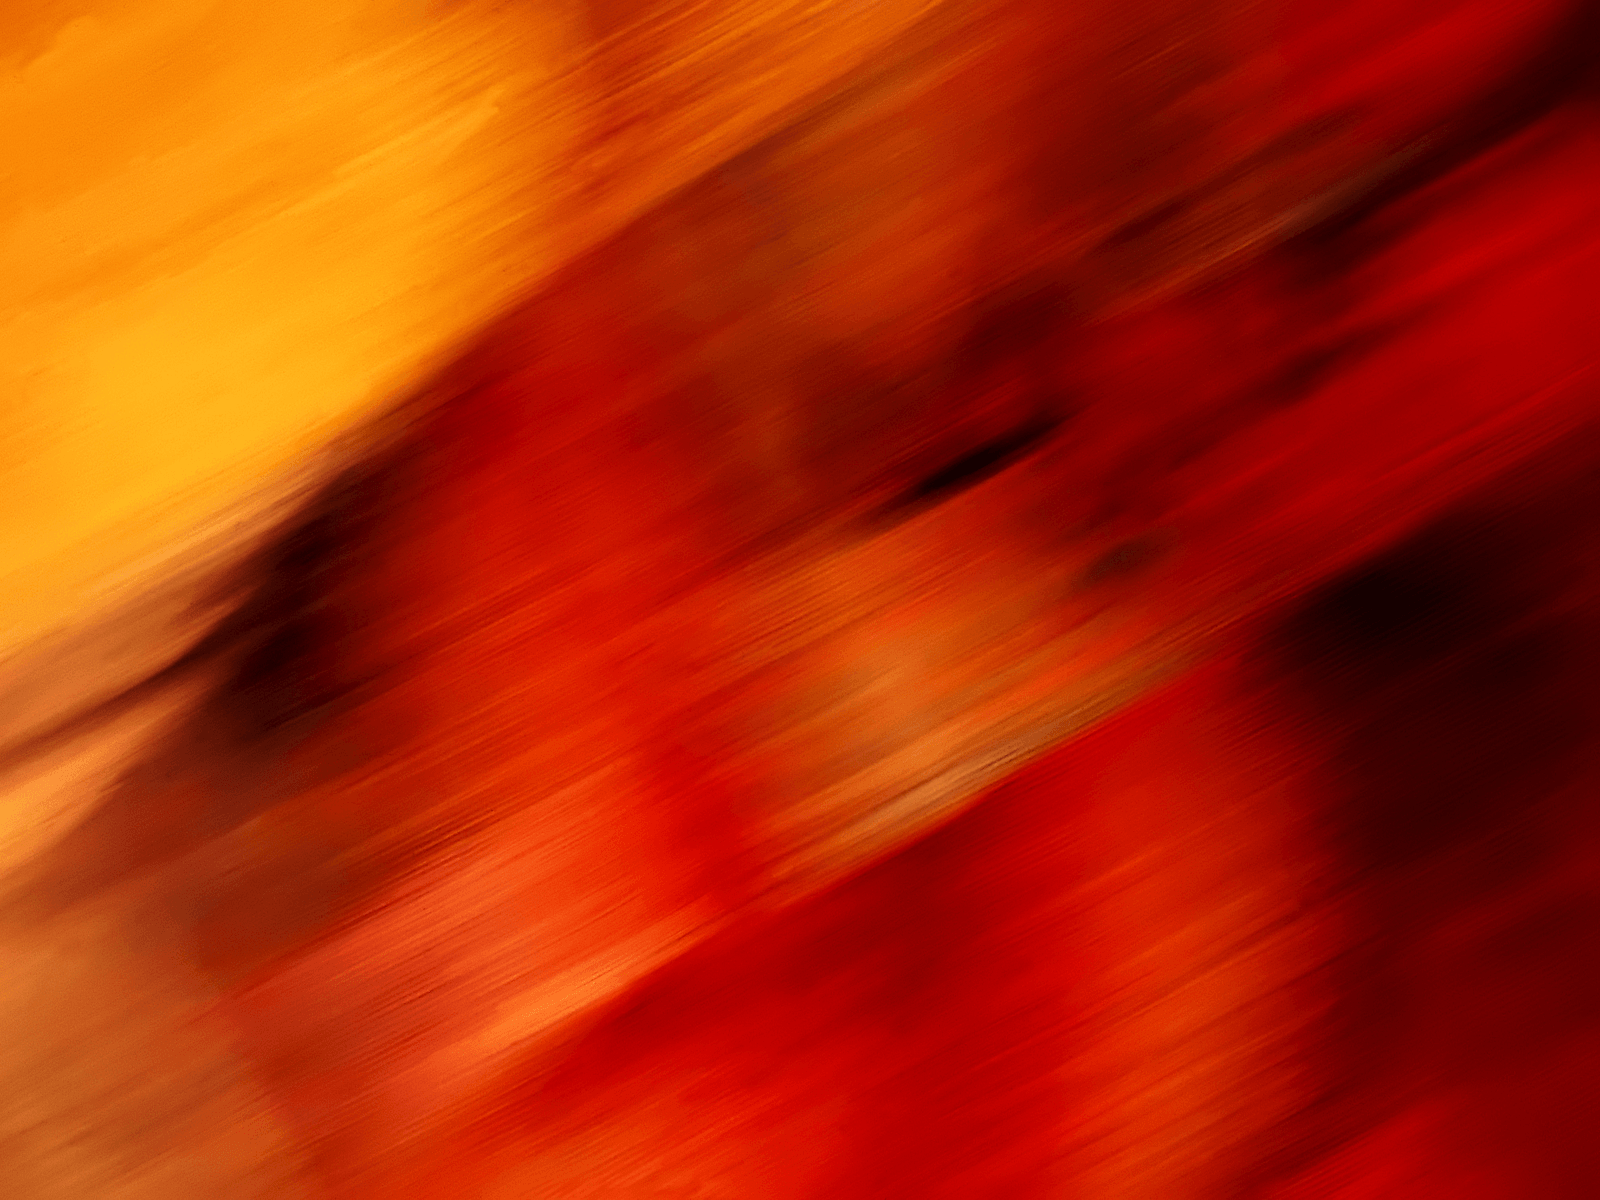 Bạn đang tìm kiếm hình nền đầy sức sống màu đỏ cam? Hãy thưởng thức bộ sưu tập tuyệt vời này của Wallpaper Cave. Với những gam màu này, bạn sẽ có một cái nhìn hoàn hảo cho màn hình của mình, giúp tạo nên không gian sống động và phong cách. Xem ngay!